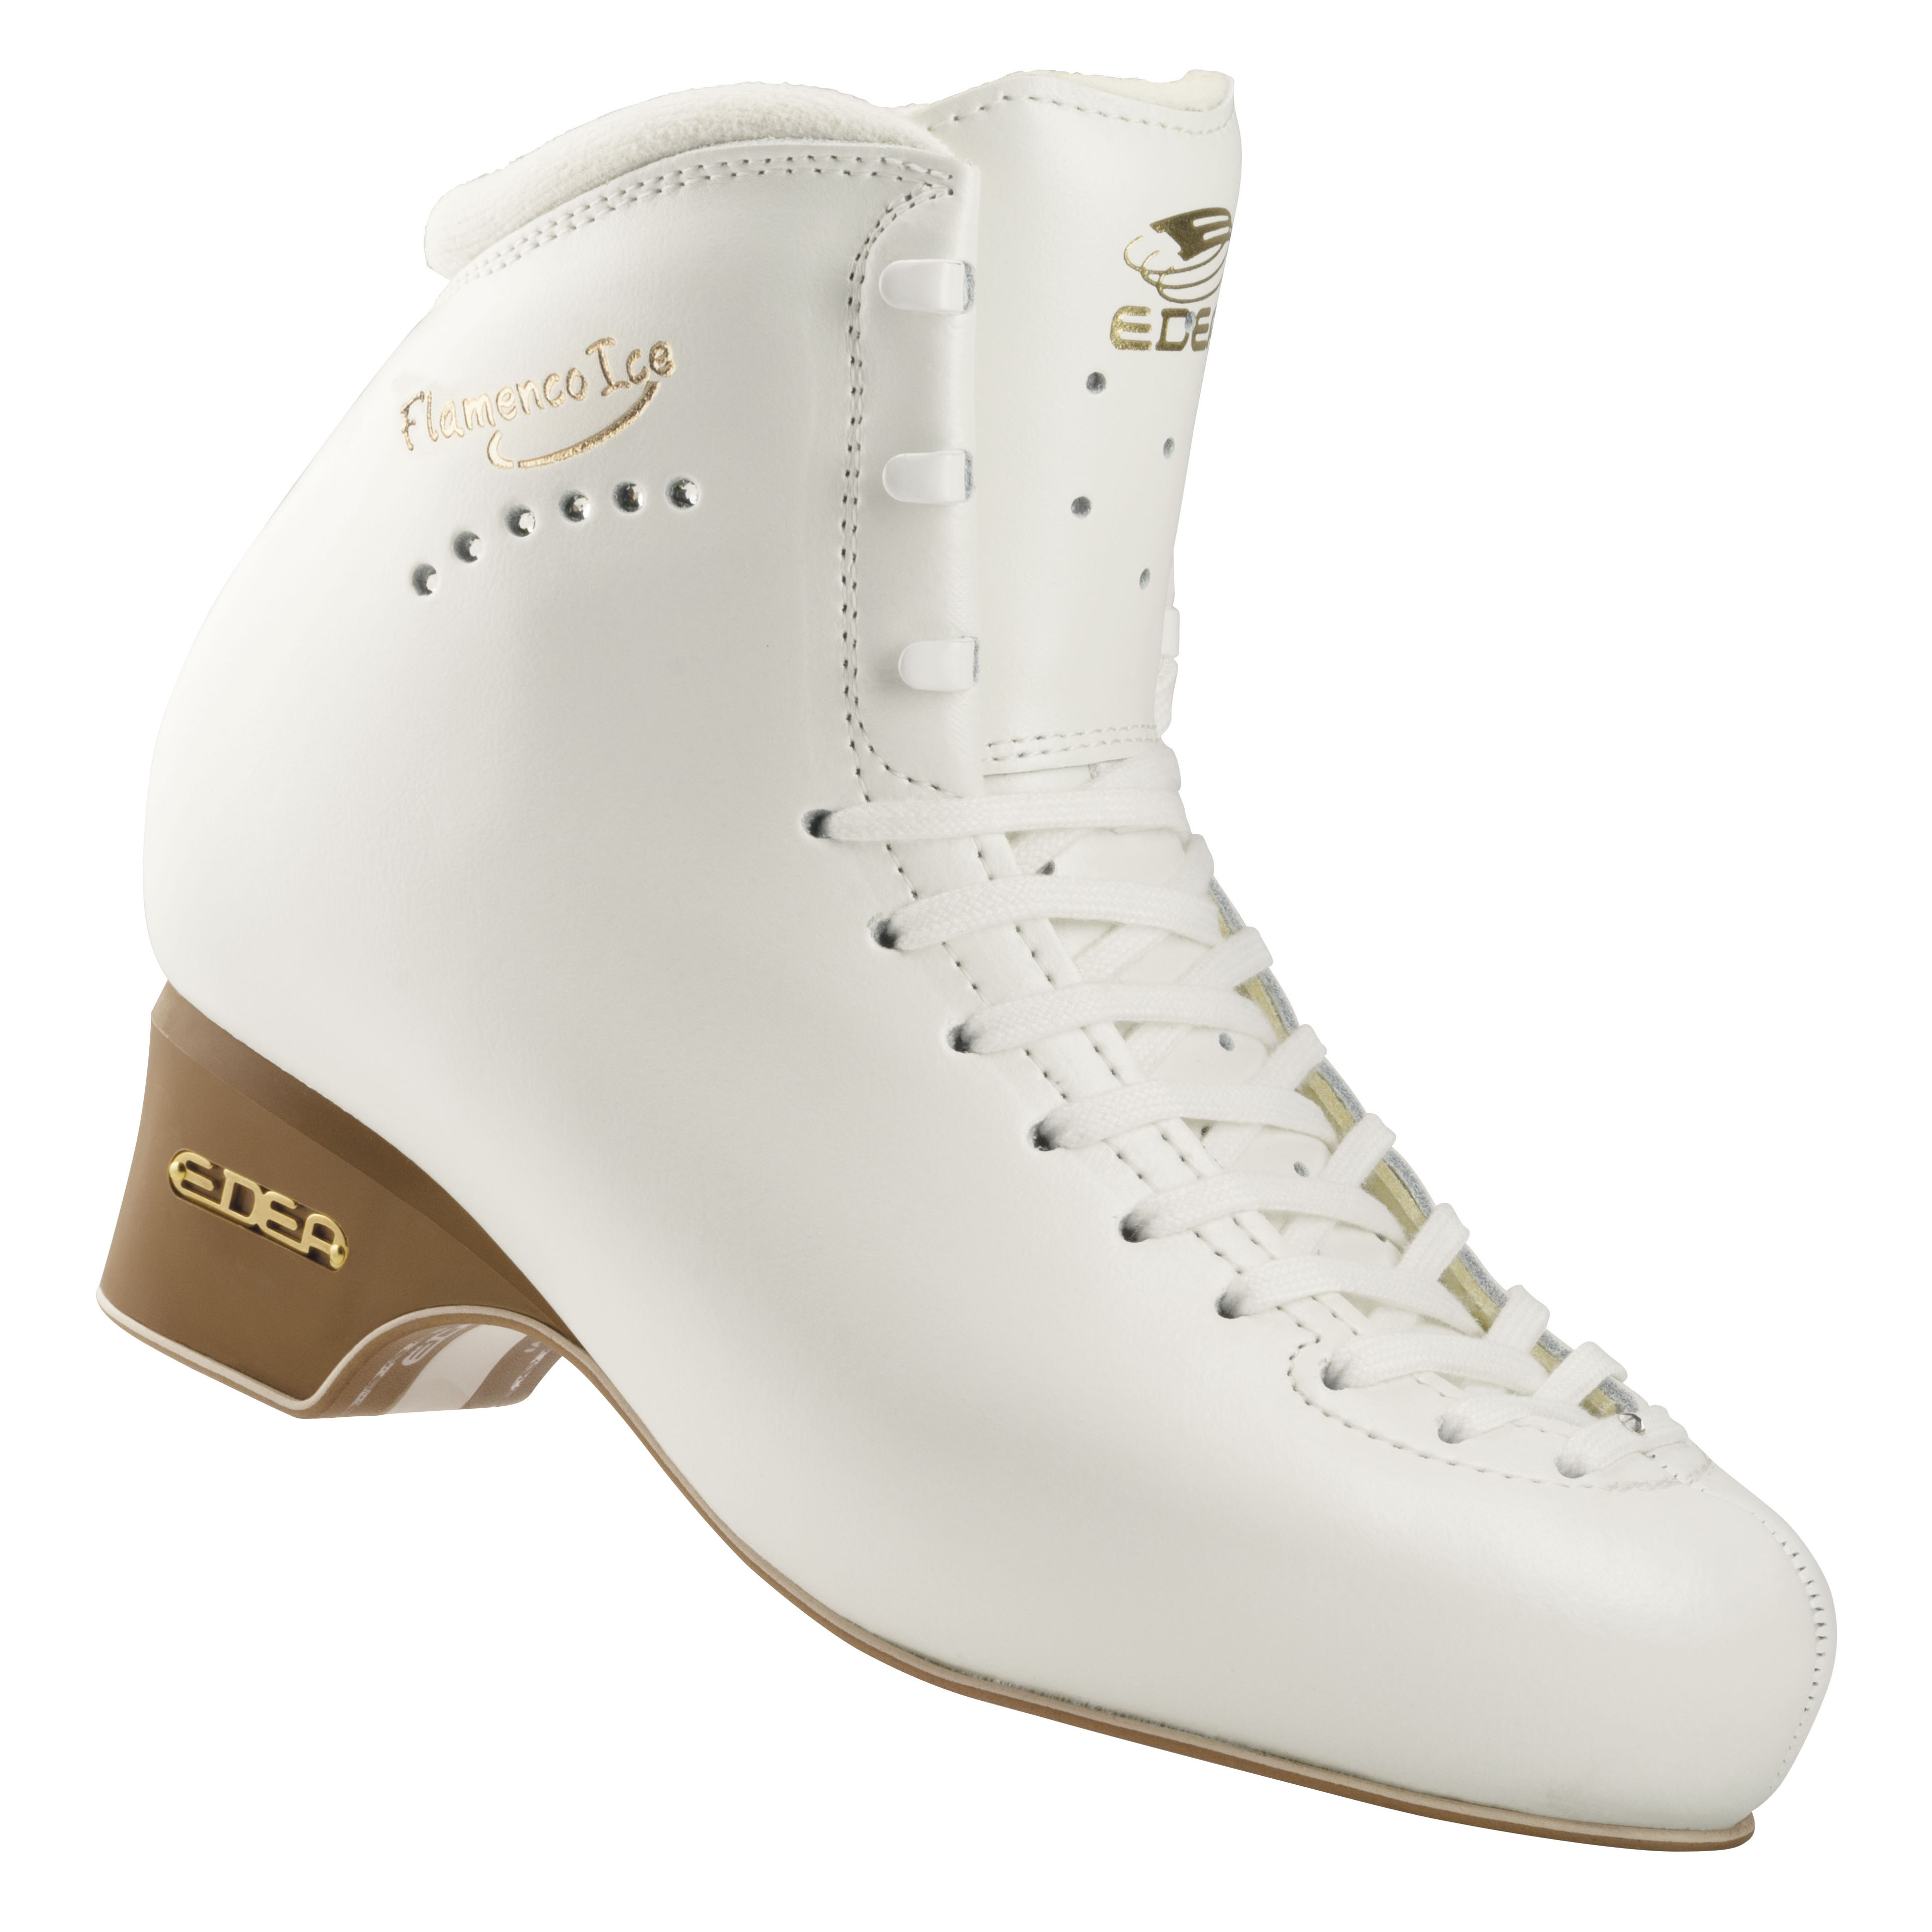 Фигурные ботинки Edea Flamenco (Белые)